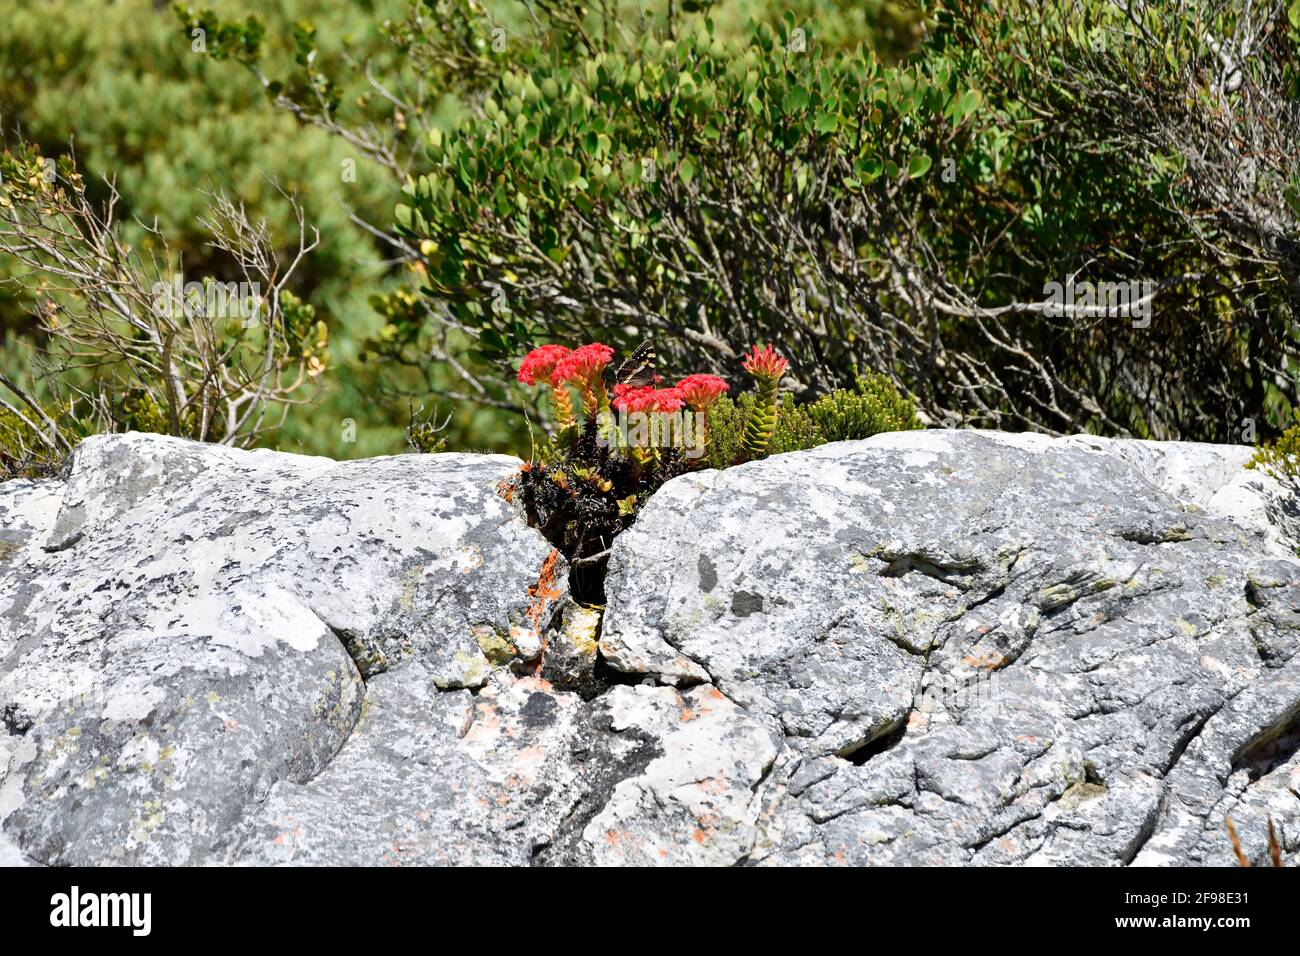 Crasula rouge [Crassula coccinea], floraison dans les roches de grès du Cap sud-ouest, avec présence de Citrus Swallowtail Butterfly [Papilio demodocus], Afrique du Sud. Banque D'Images